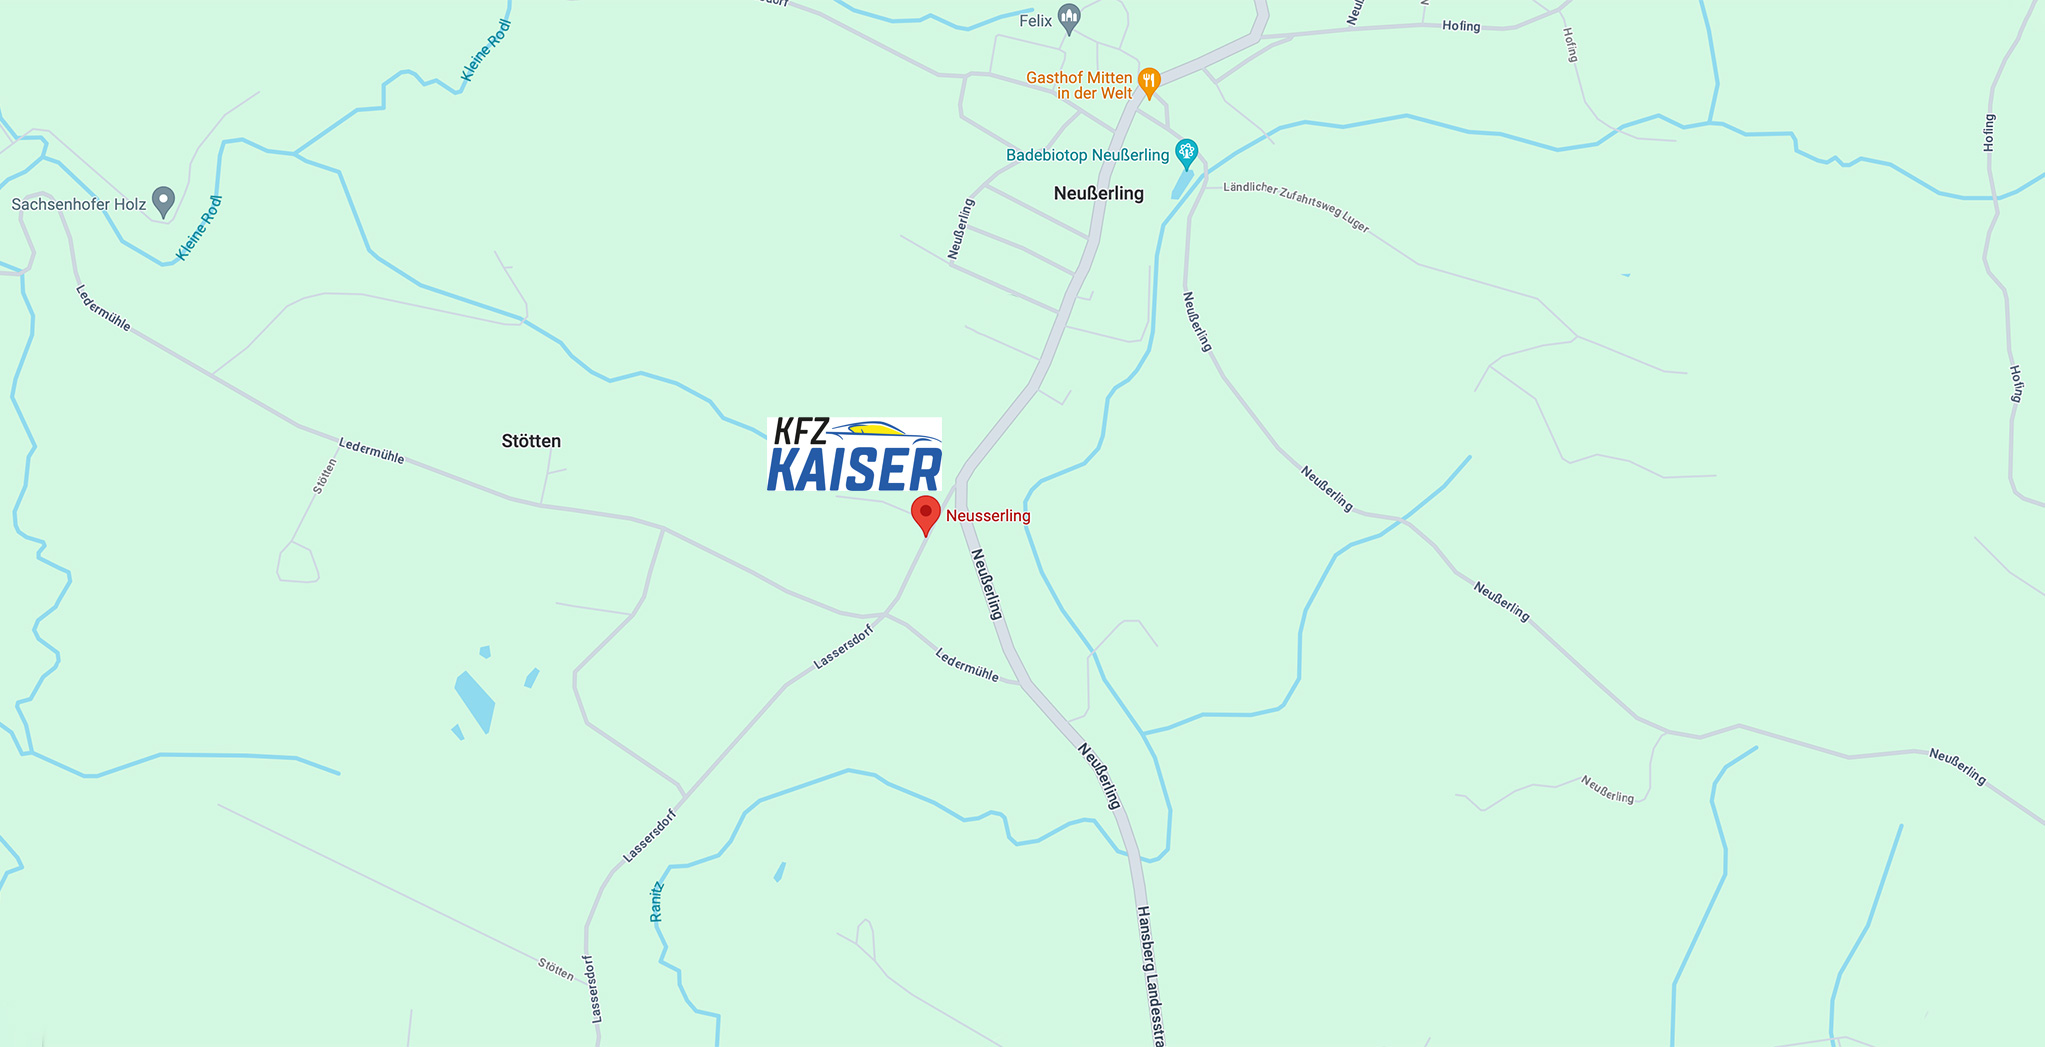 kfz-kaiser-neusserling-herzogsdorf-oberneukirchen-anfahrt